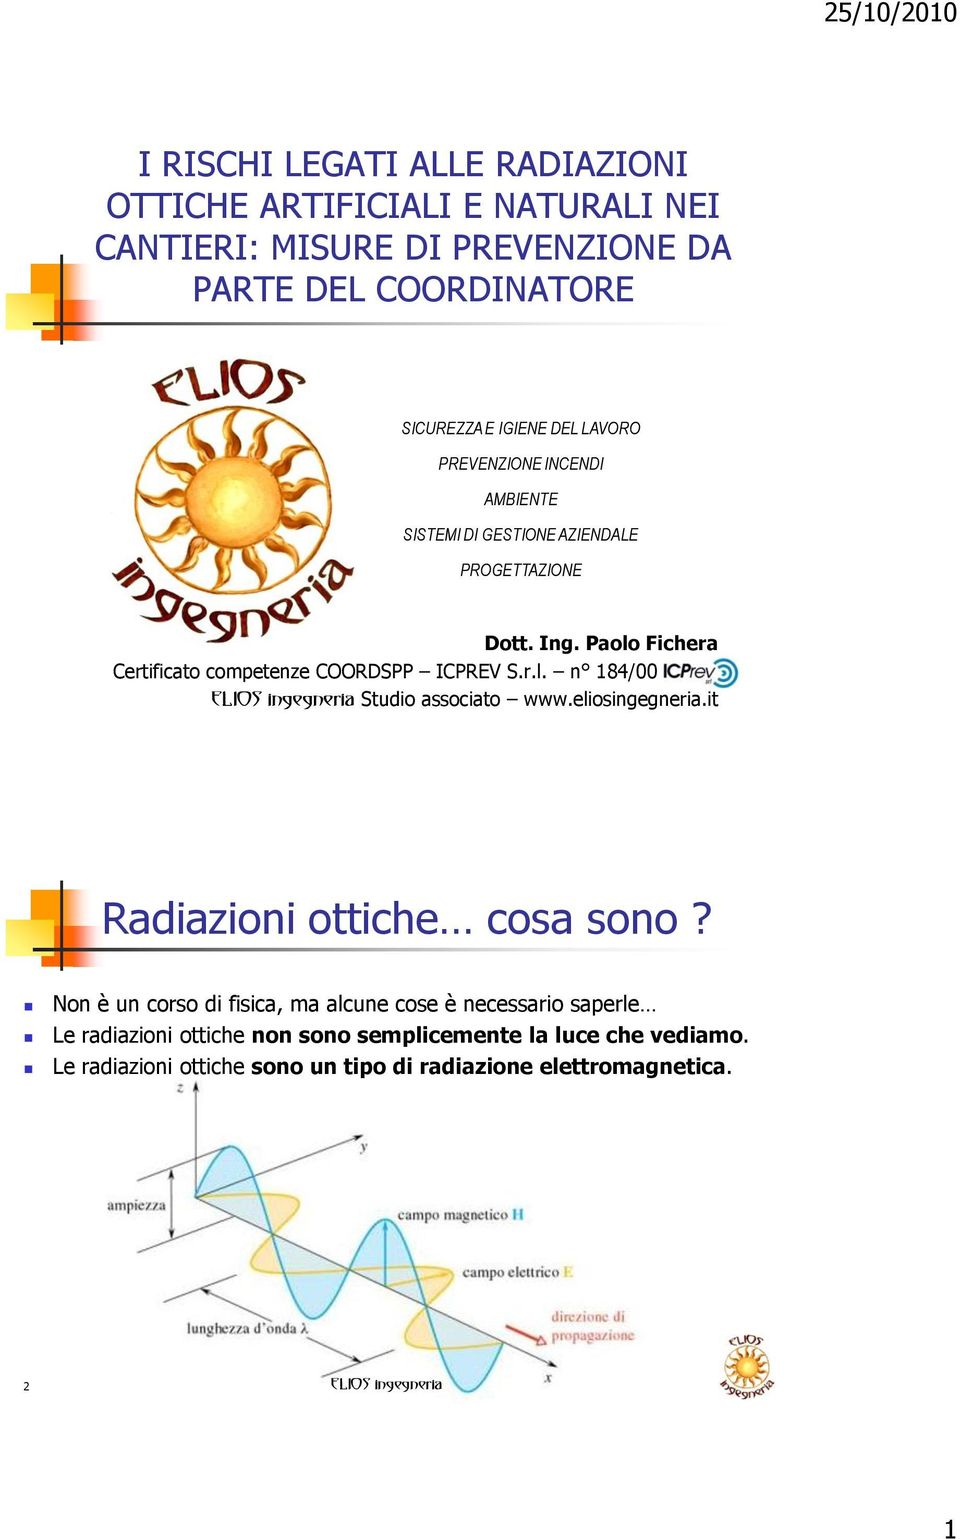 Paolo Fichera Certificato competenze COORDSPP ICPREV S.r.l. n 184/00. Studio associato www.eliosingegneria.it Radiazioni ottiche cosa sono?